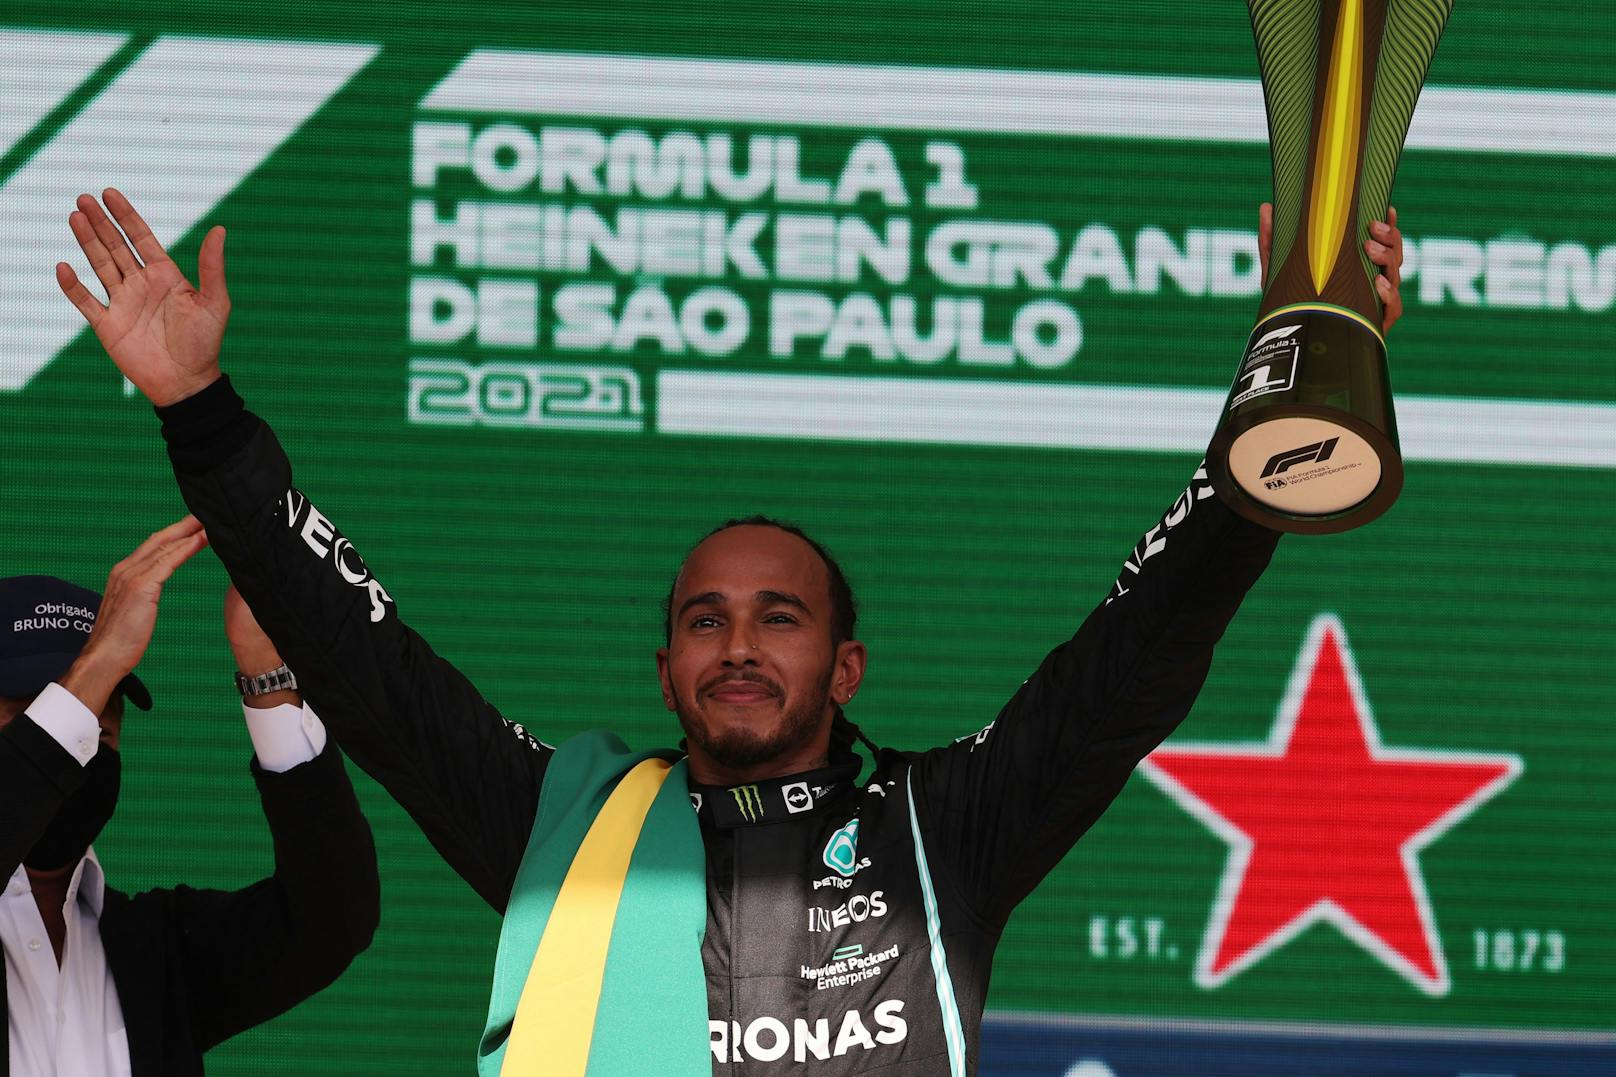 Hamilton schlägt in Brasilien zurück. Er gewinnt vor Verstappen und Bottas, obwohl er das Rennen von Rang zehn aus in Angriff nimmt. Auf der Strecke kommt es beim ersten Überholversuch fast zur Karambolage mit Verstappen. Der WM-Fight bleibt aufgeheizt.